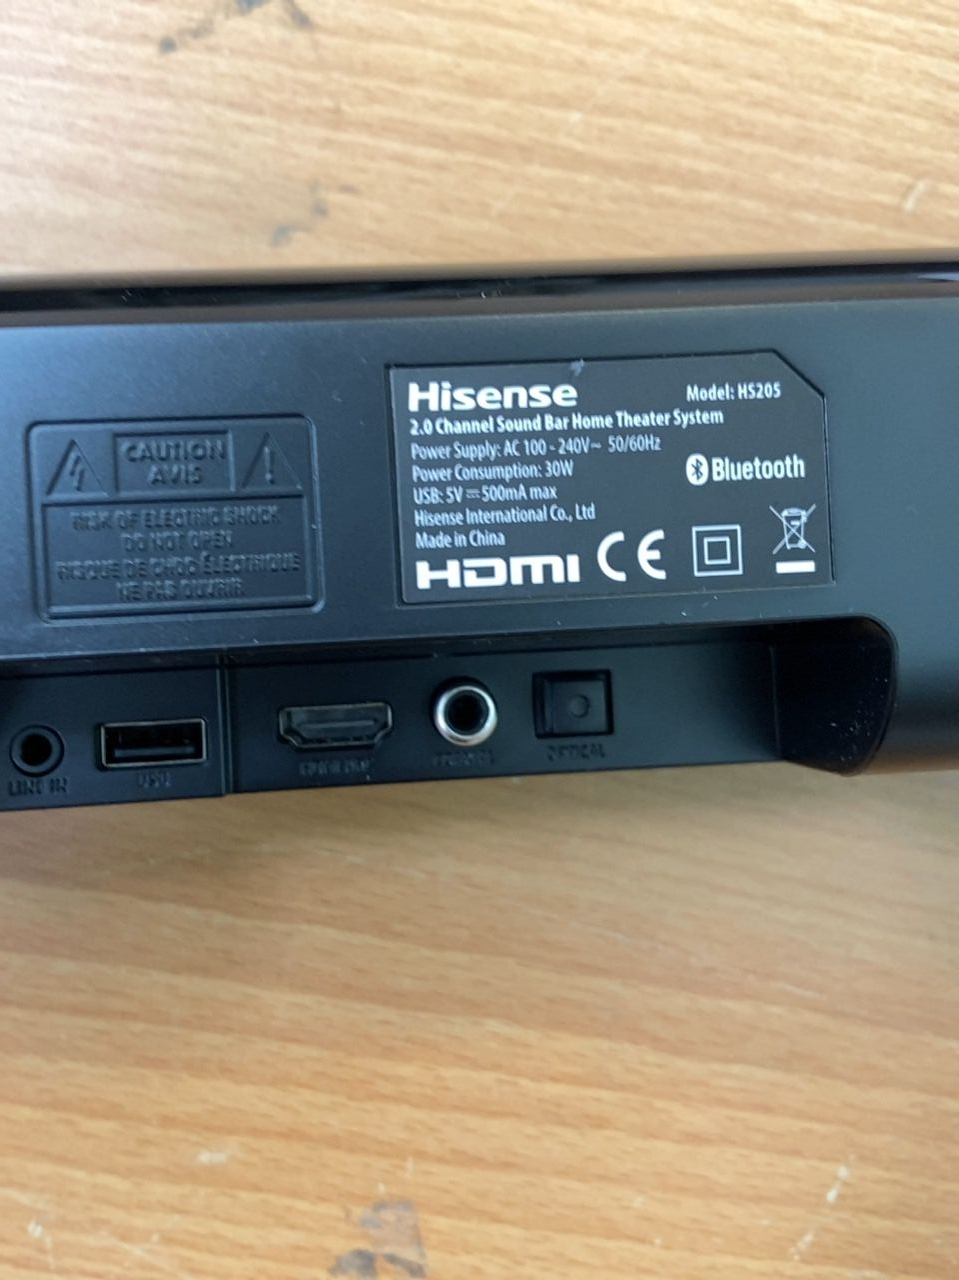 SoundBar - 2.0, o výkonu 60 W Hisense HS205